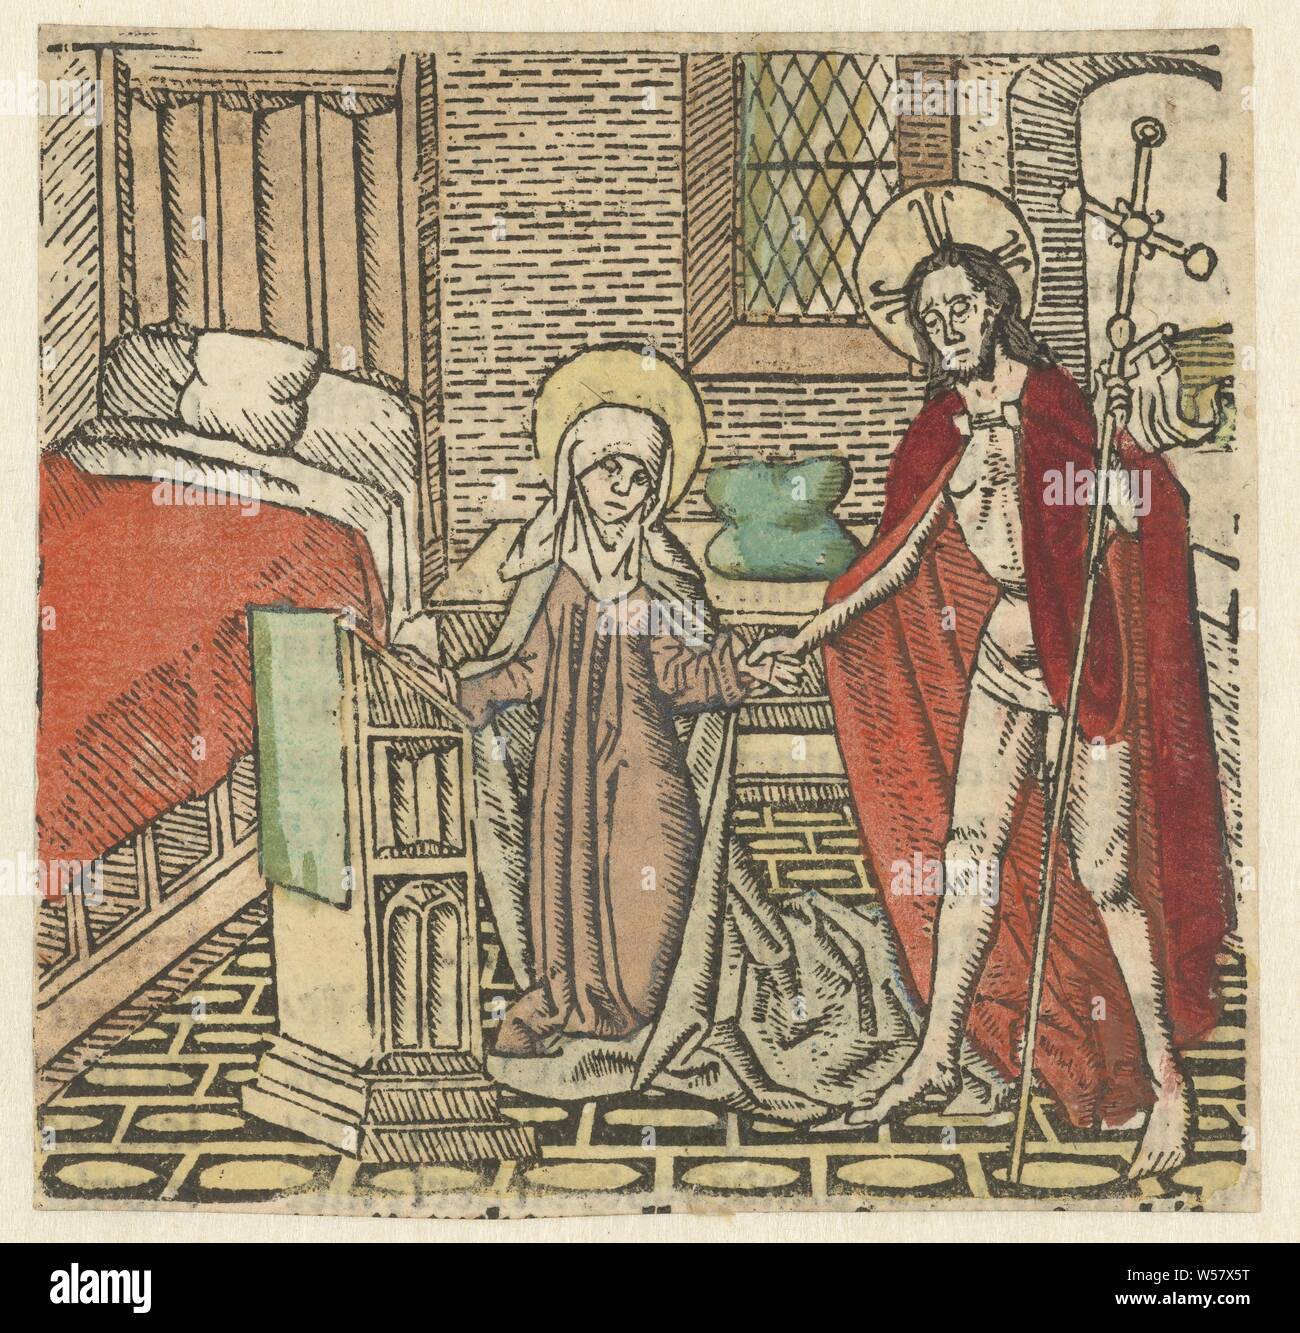 Christus erscheint Maria, Maria kniet im Zimmer, hält hand Erscheinen Christi, Christus, vielleicht als Pilger verkleidet, zu seiner Mutter, die in der Regel angezeigt wird beten, Meester van Haarlem (zugeschrieben), Nederlanden, 1485-1491, Papier, H 92 mm x B 97 mm Stockfoto